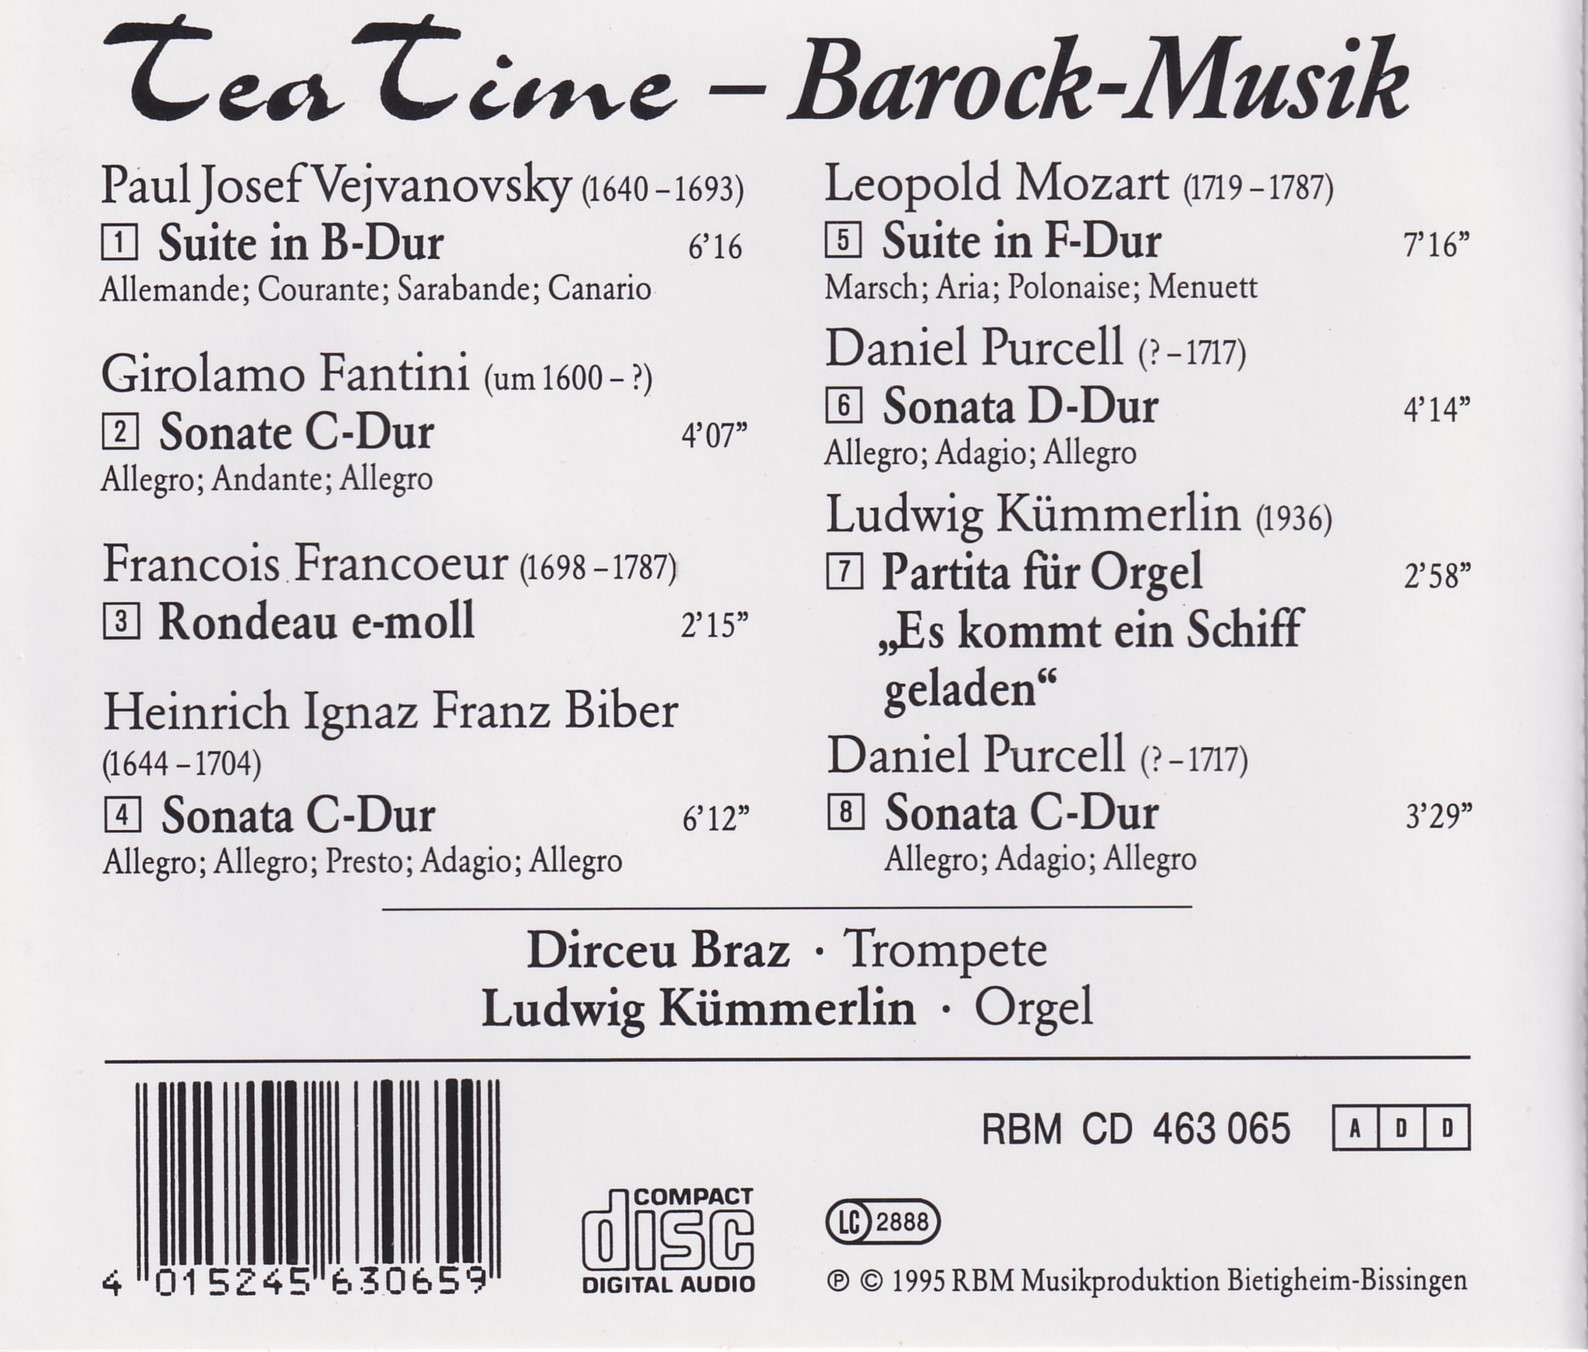 Tea Time (Bachtrompete und Orgel) - Dirceu Braz